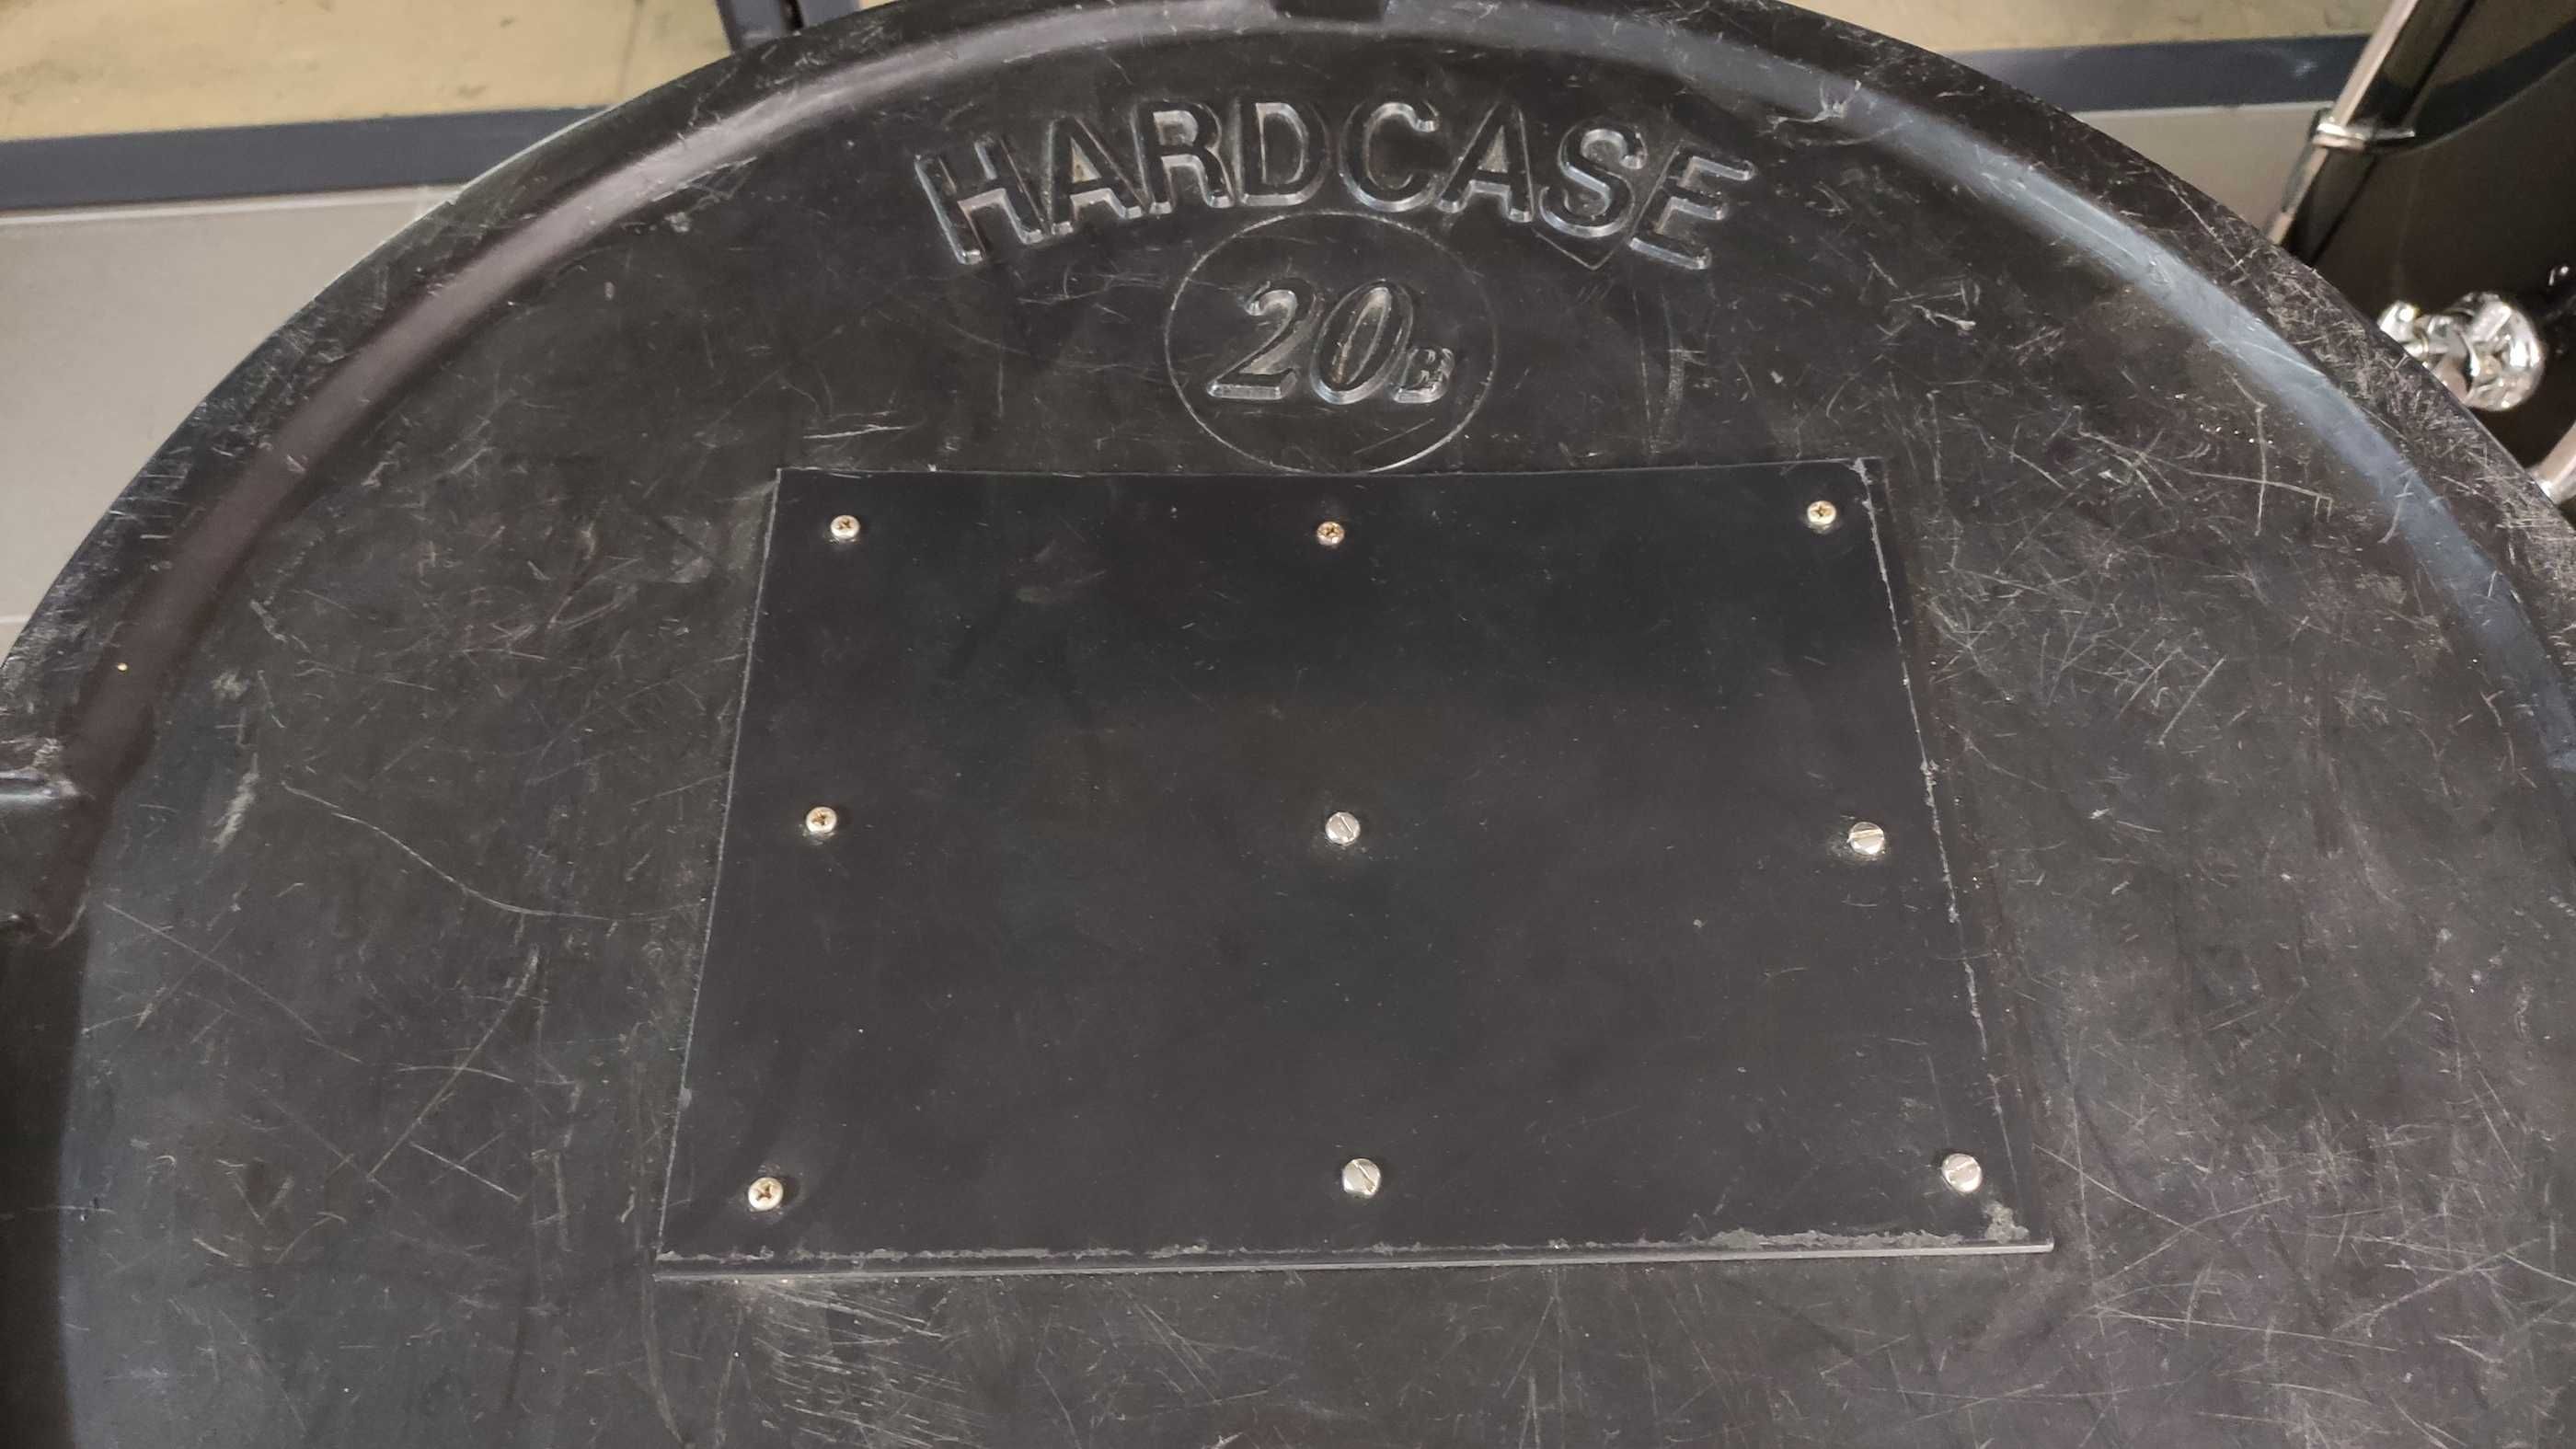 Zestaw Hardcase 10" 12" 14" 20" !!!